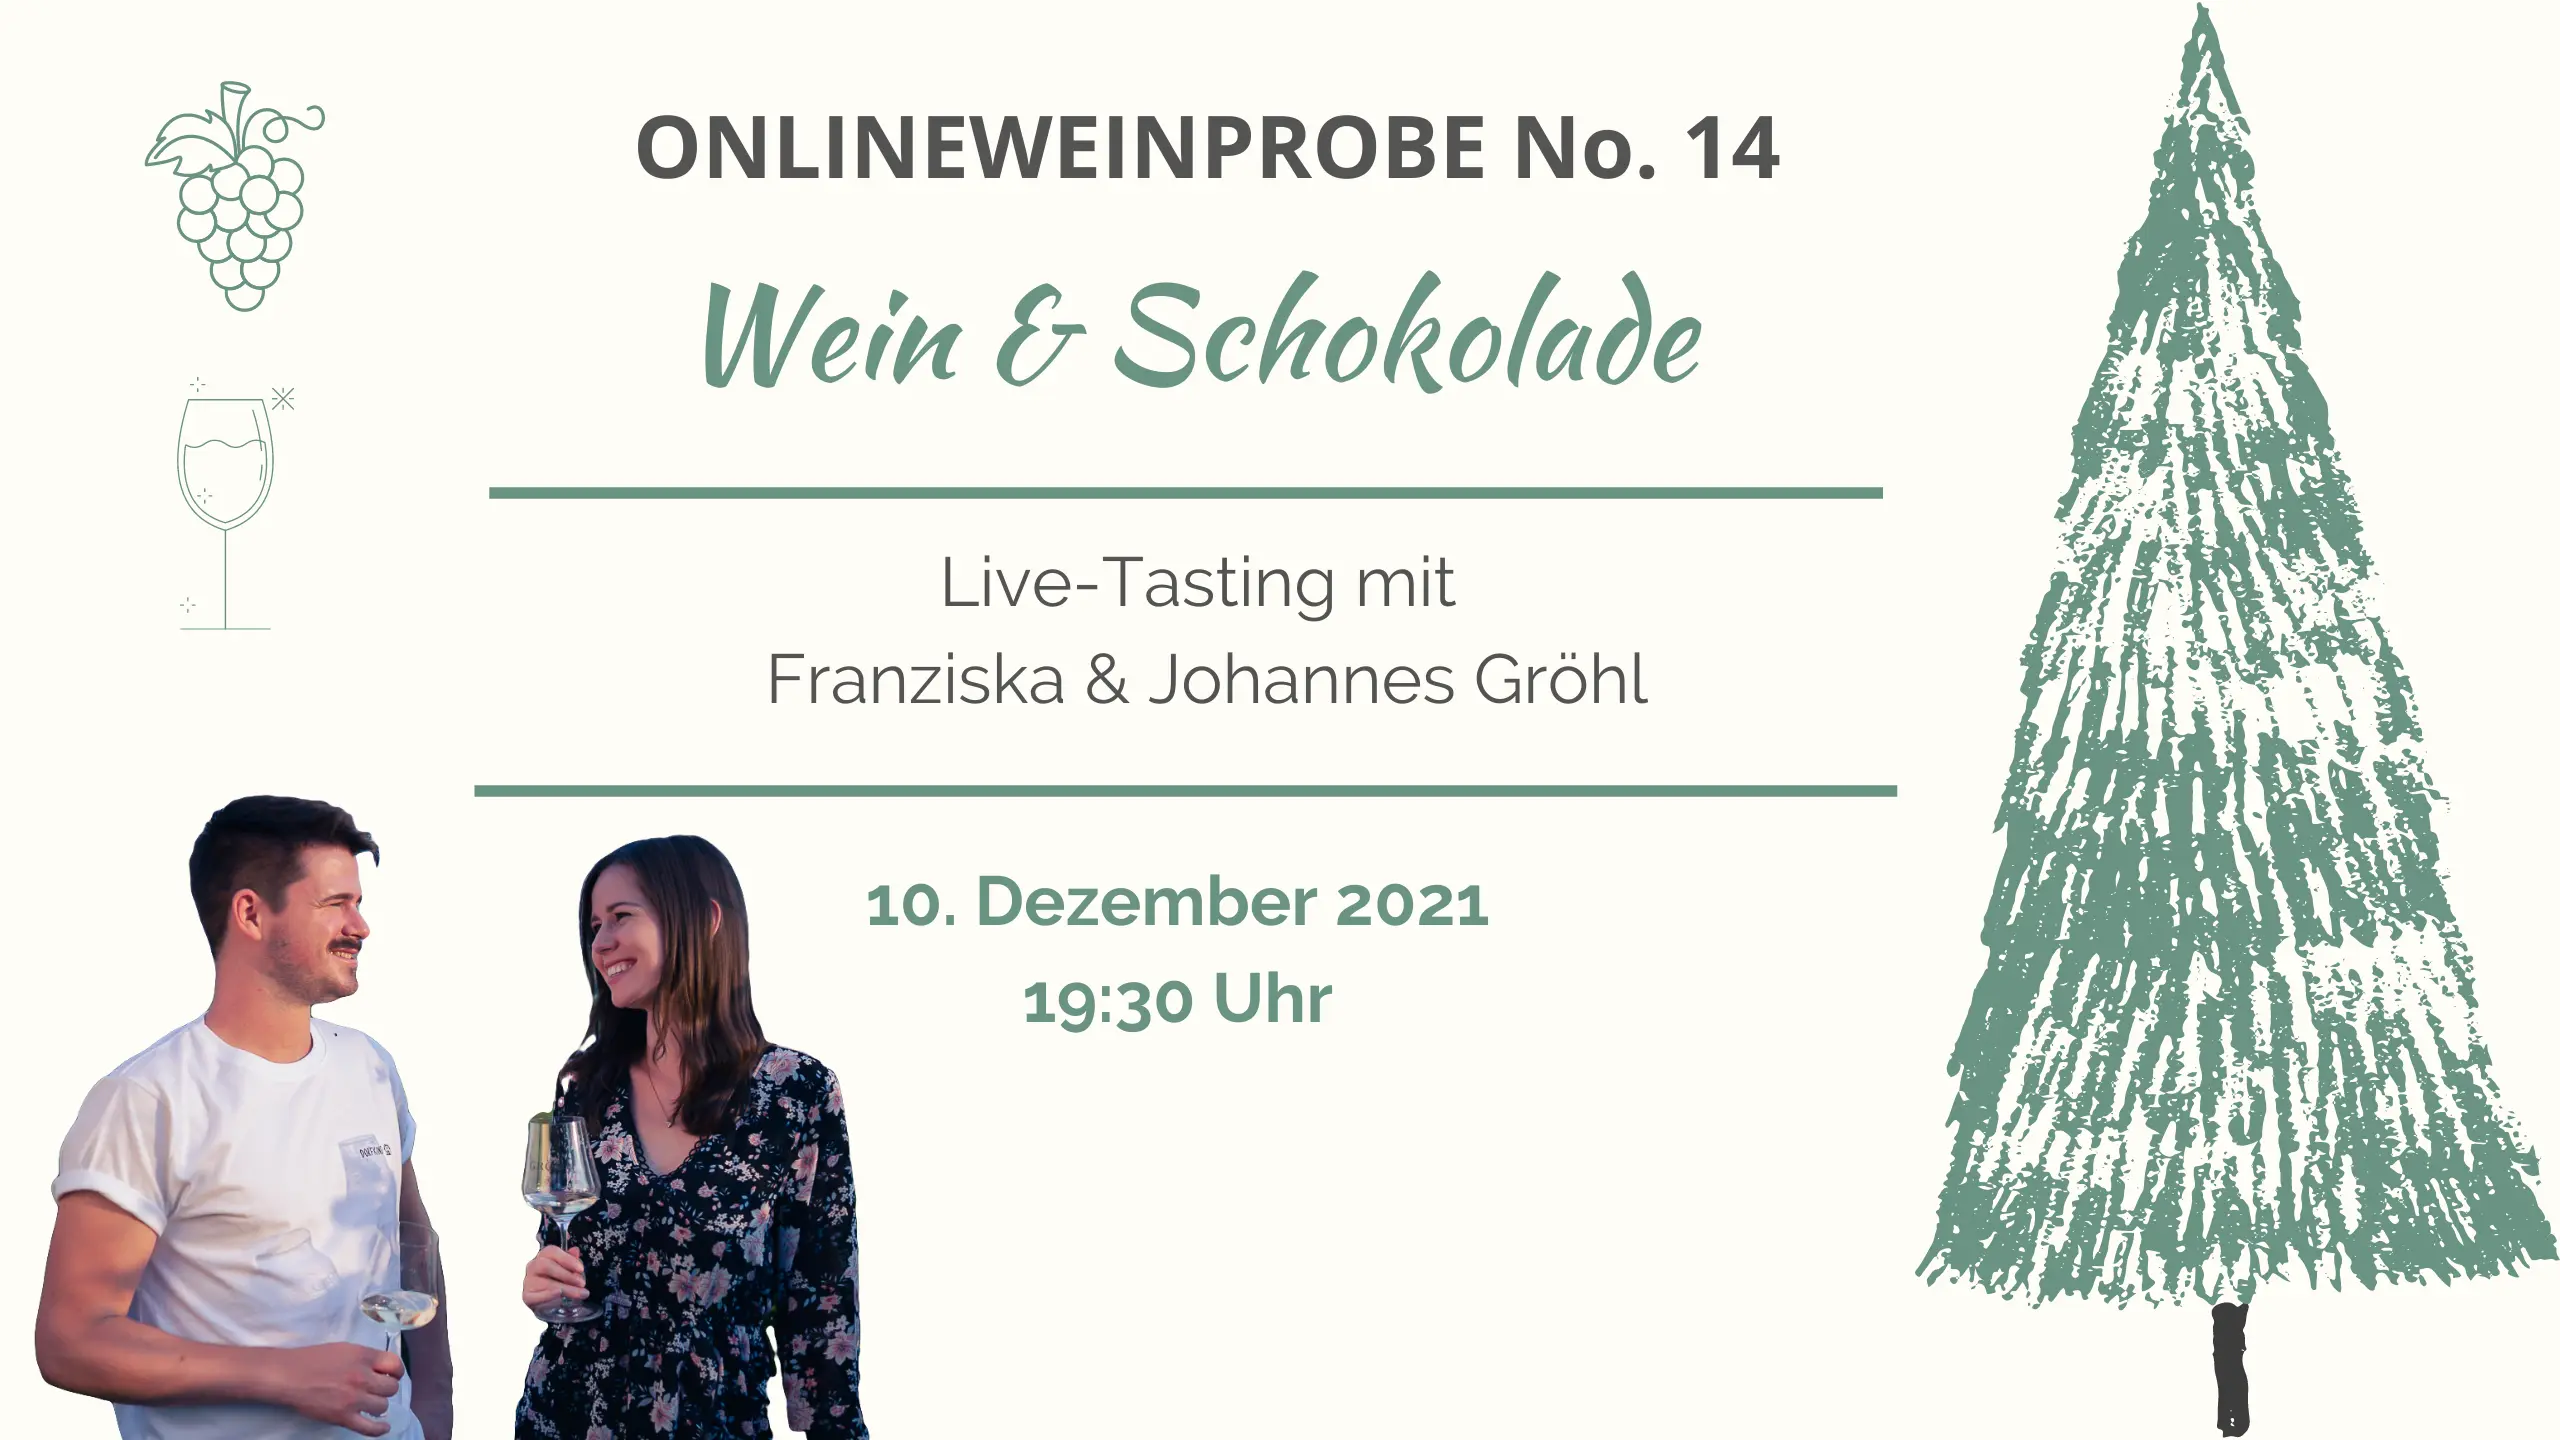 Online-Weinprobe No. 14 Wein und Schokolade